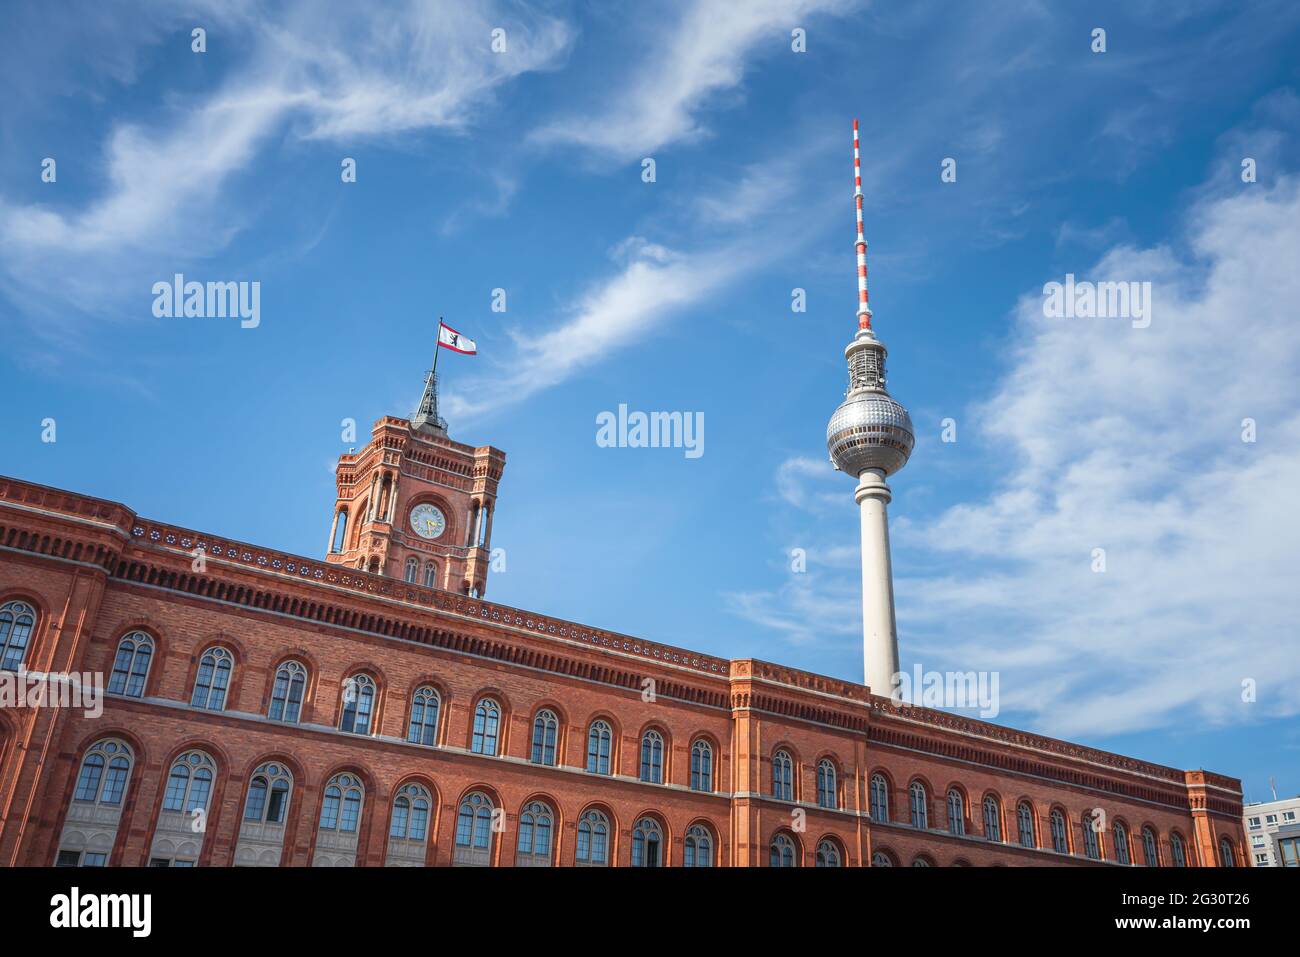 Hôtel de ville de Berlin (Rotes Rathaus) et tour de télévision (Fersehturm) - Berlin, Allemagne Banque D'Images